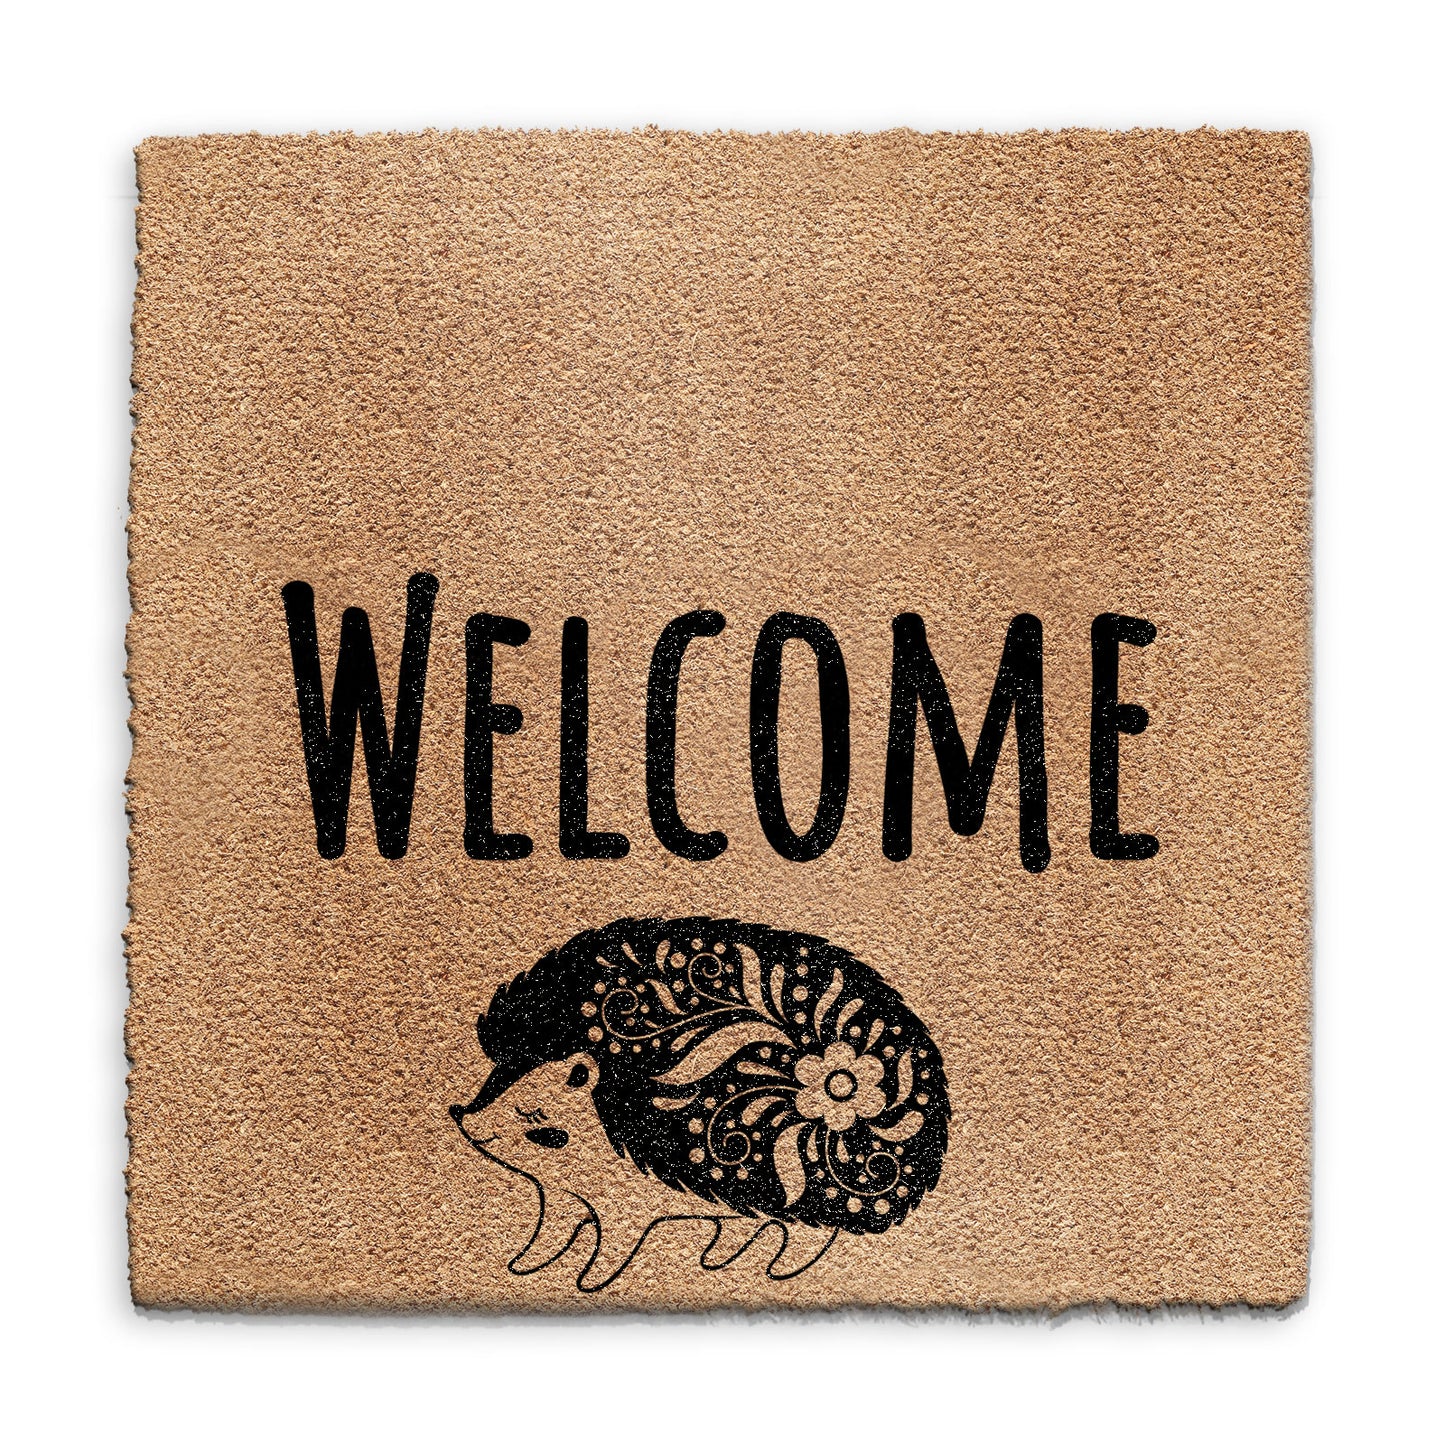 Coir Doormat - Welcome Hedgehog